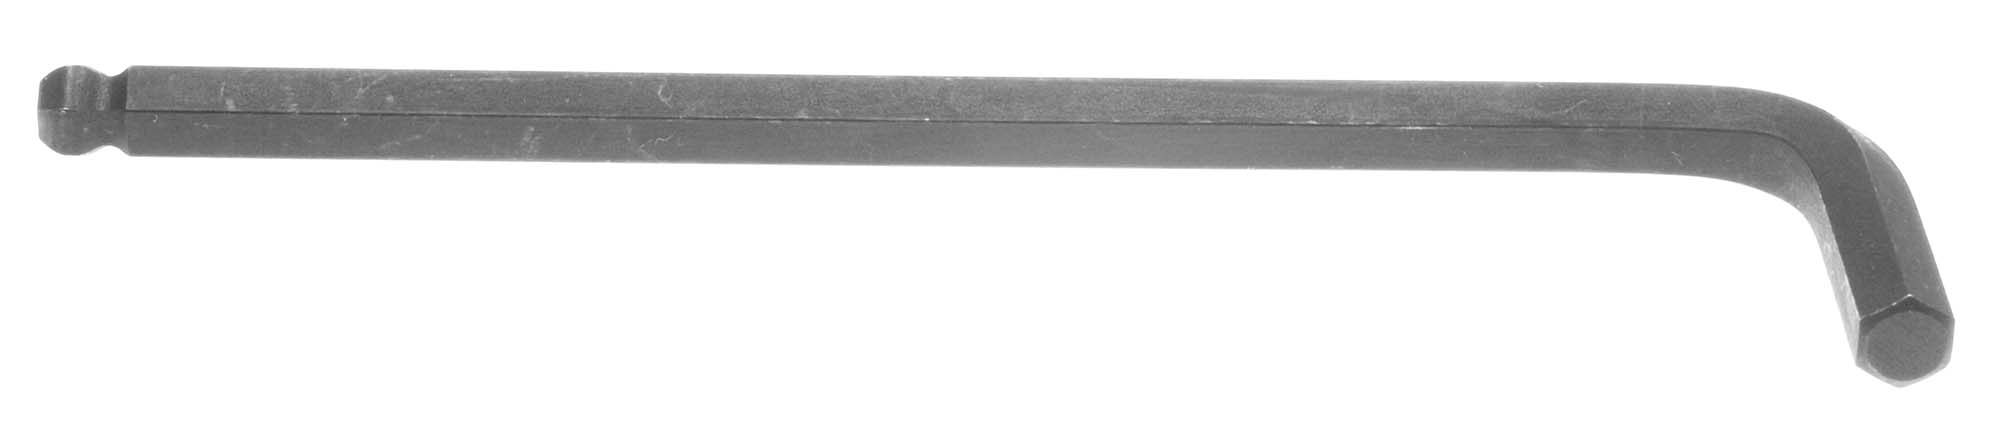 Bondhus 10915 7/16" Balldriver L-Wrench Hex Key